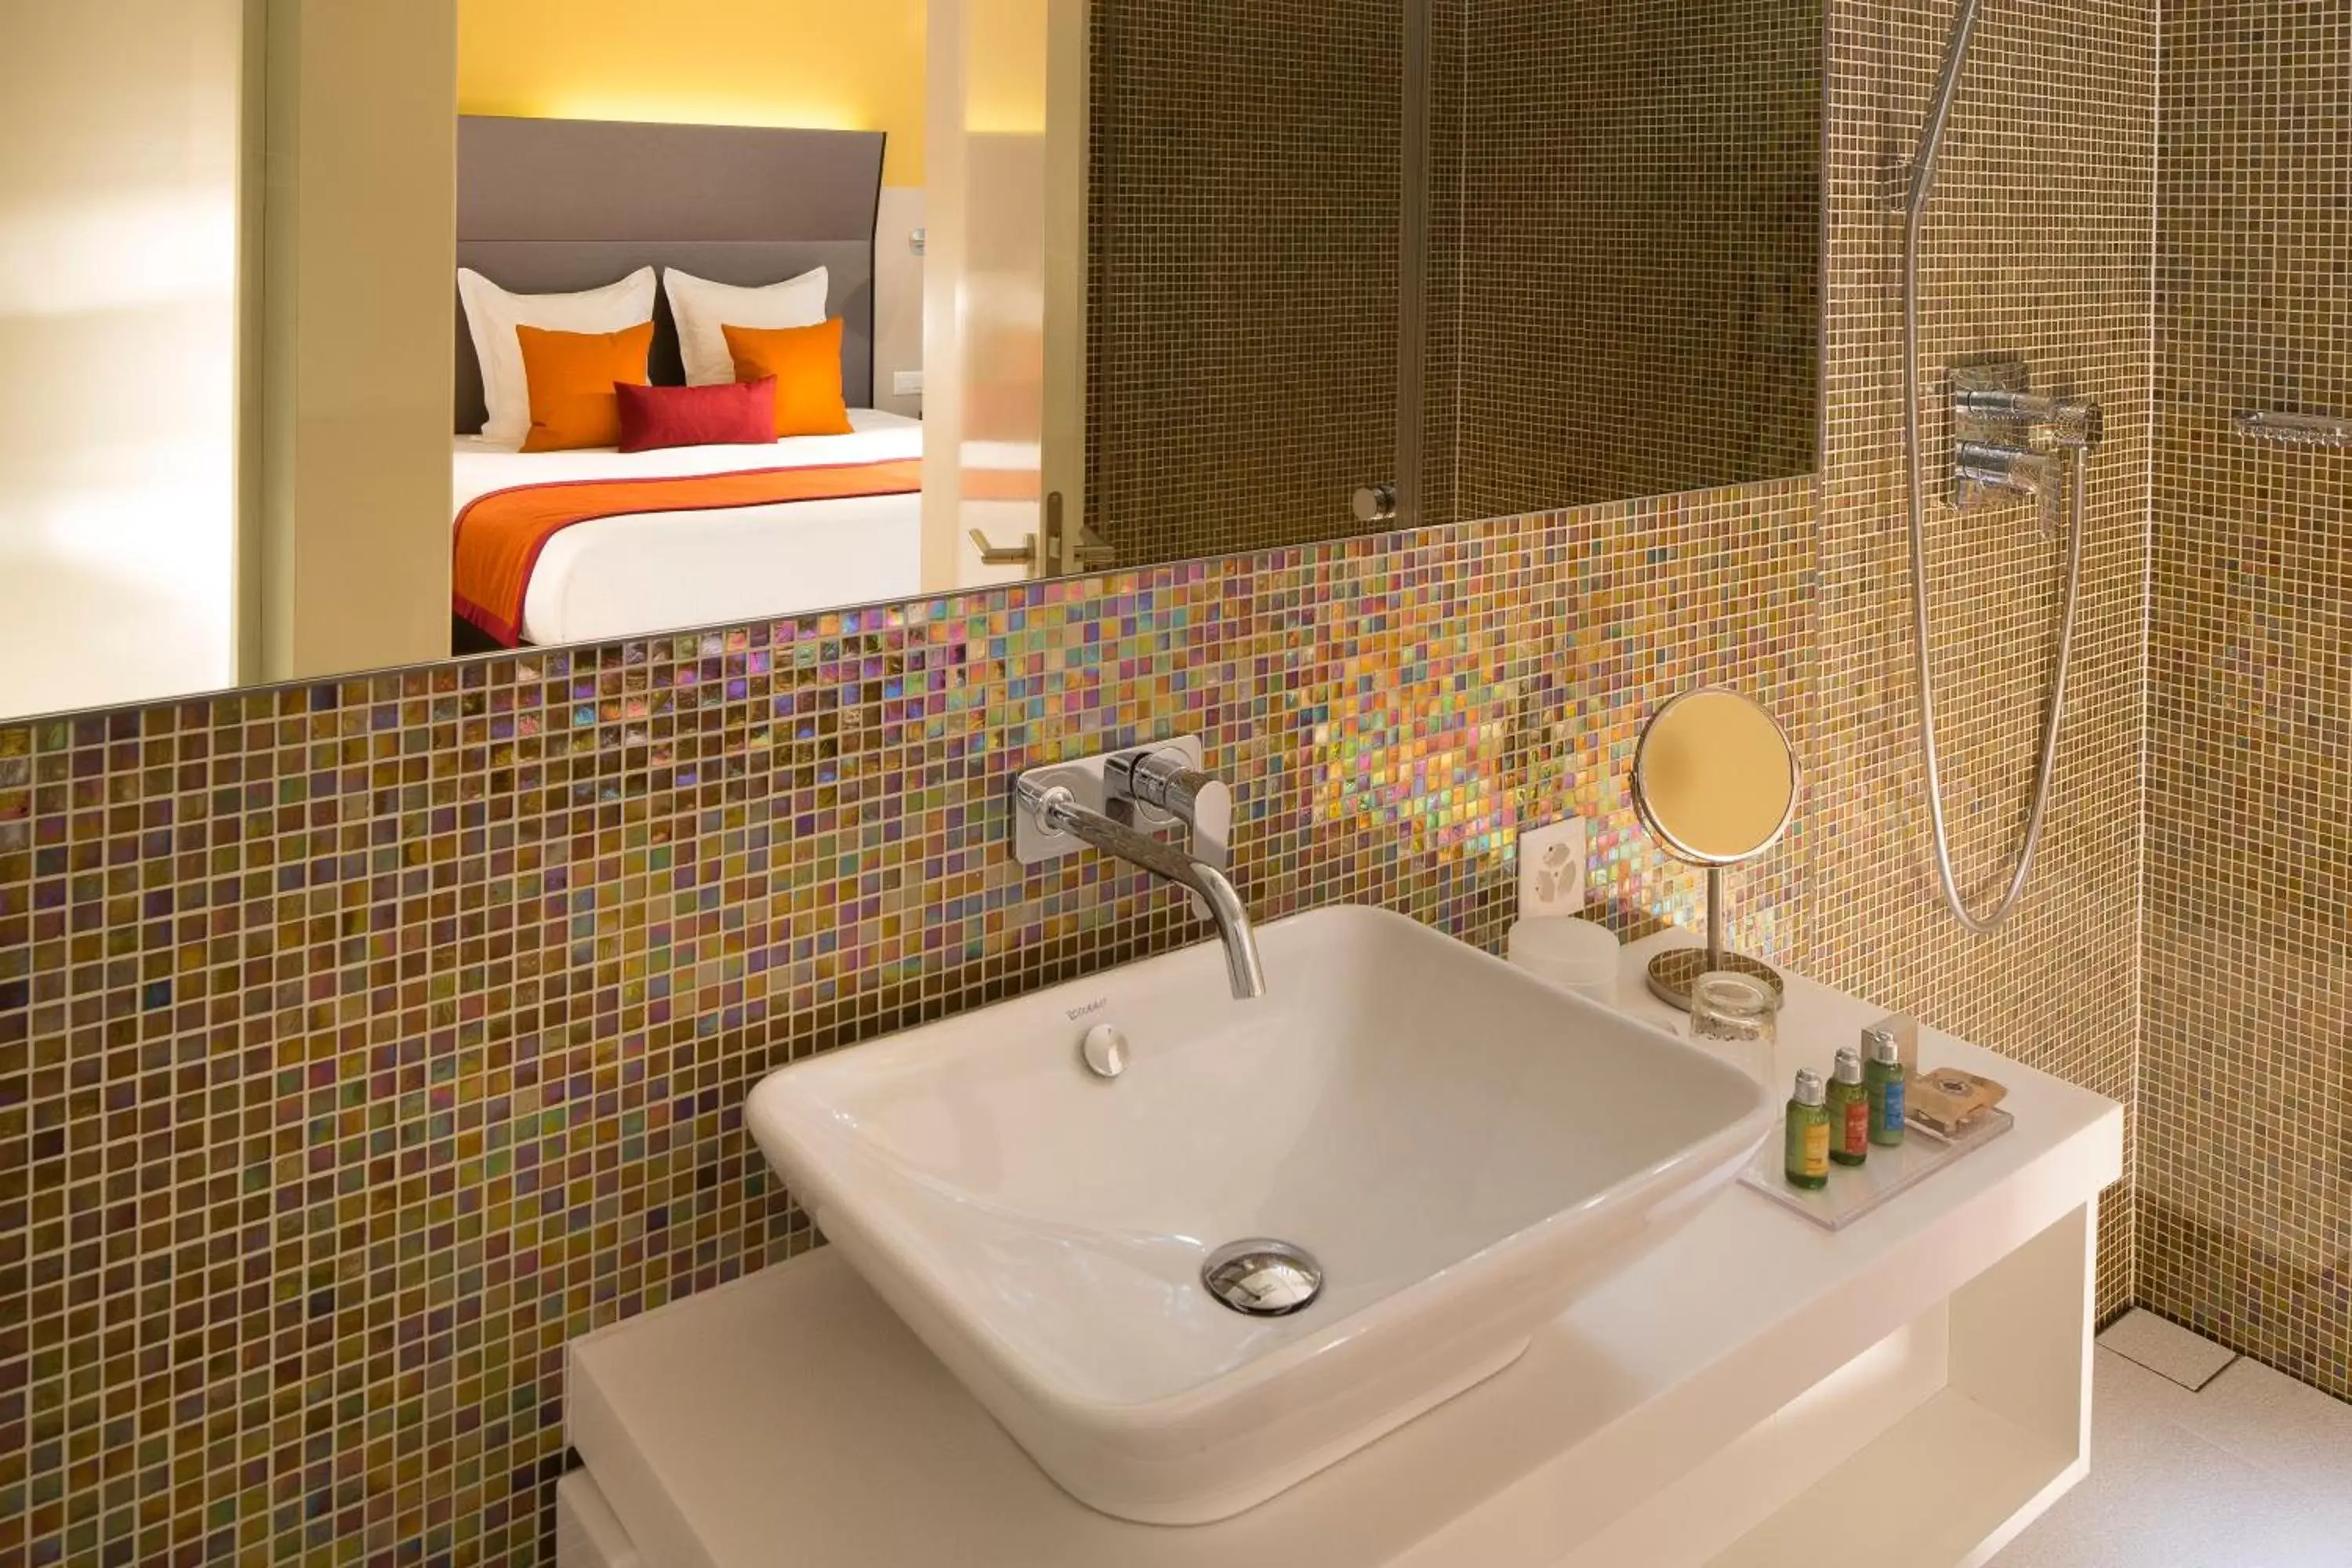 Bedroom, Bathroom in Hotel D - Design Hotel